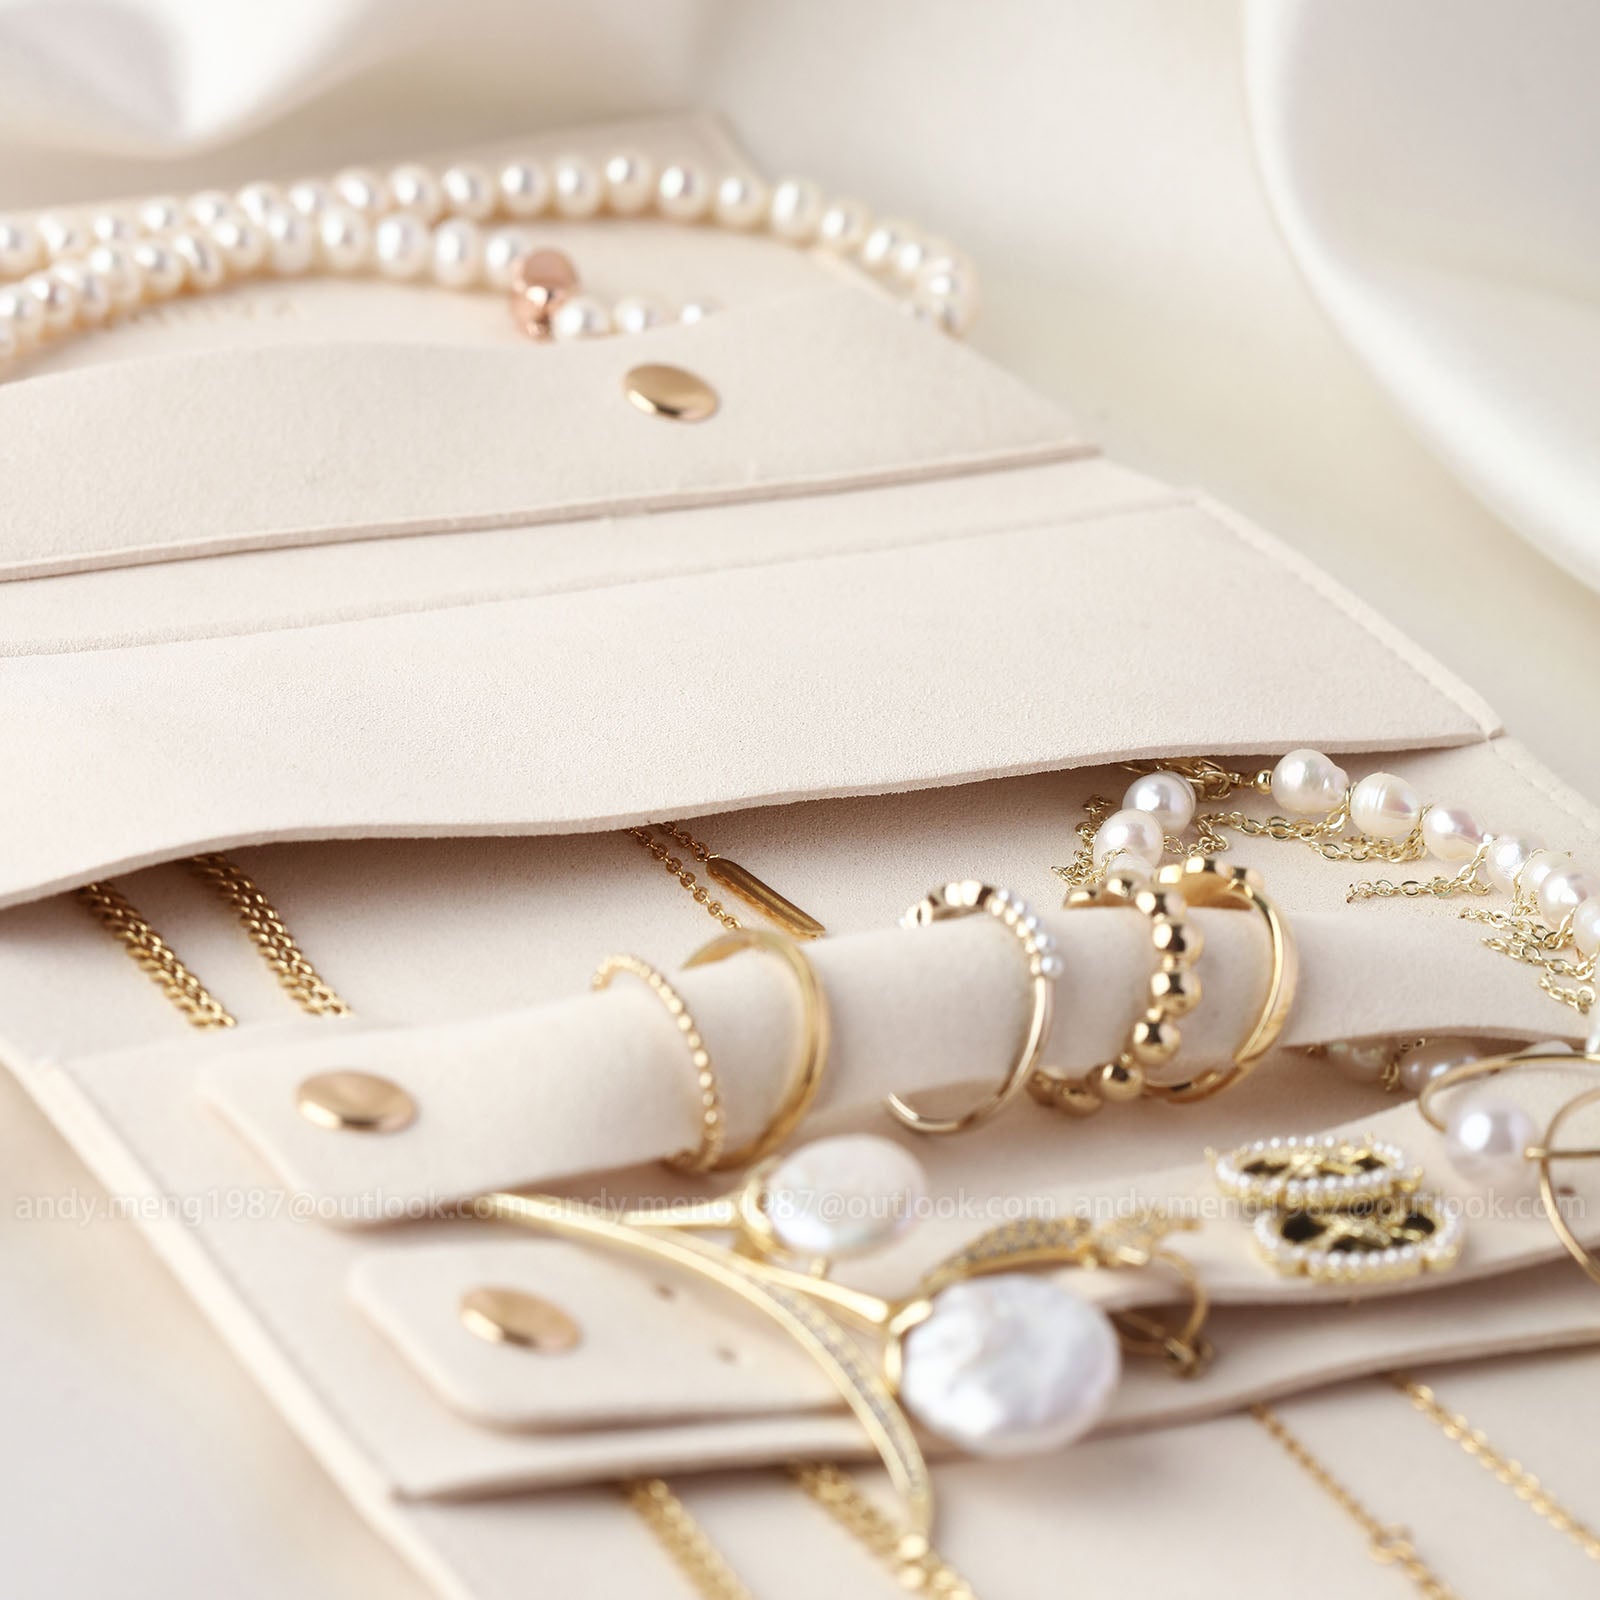 34x17cm jewelry travel pouch ivory